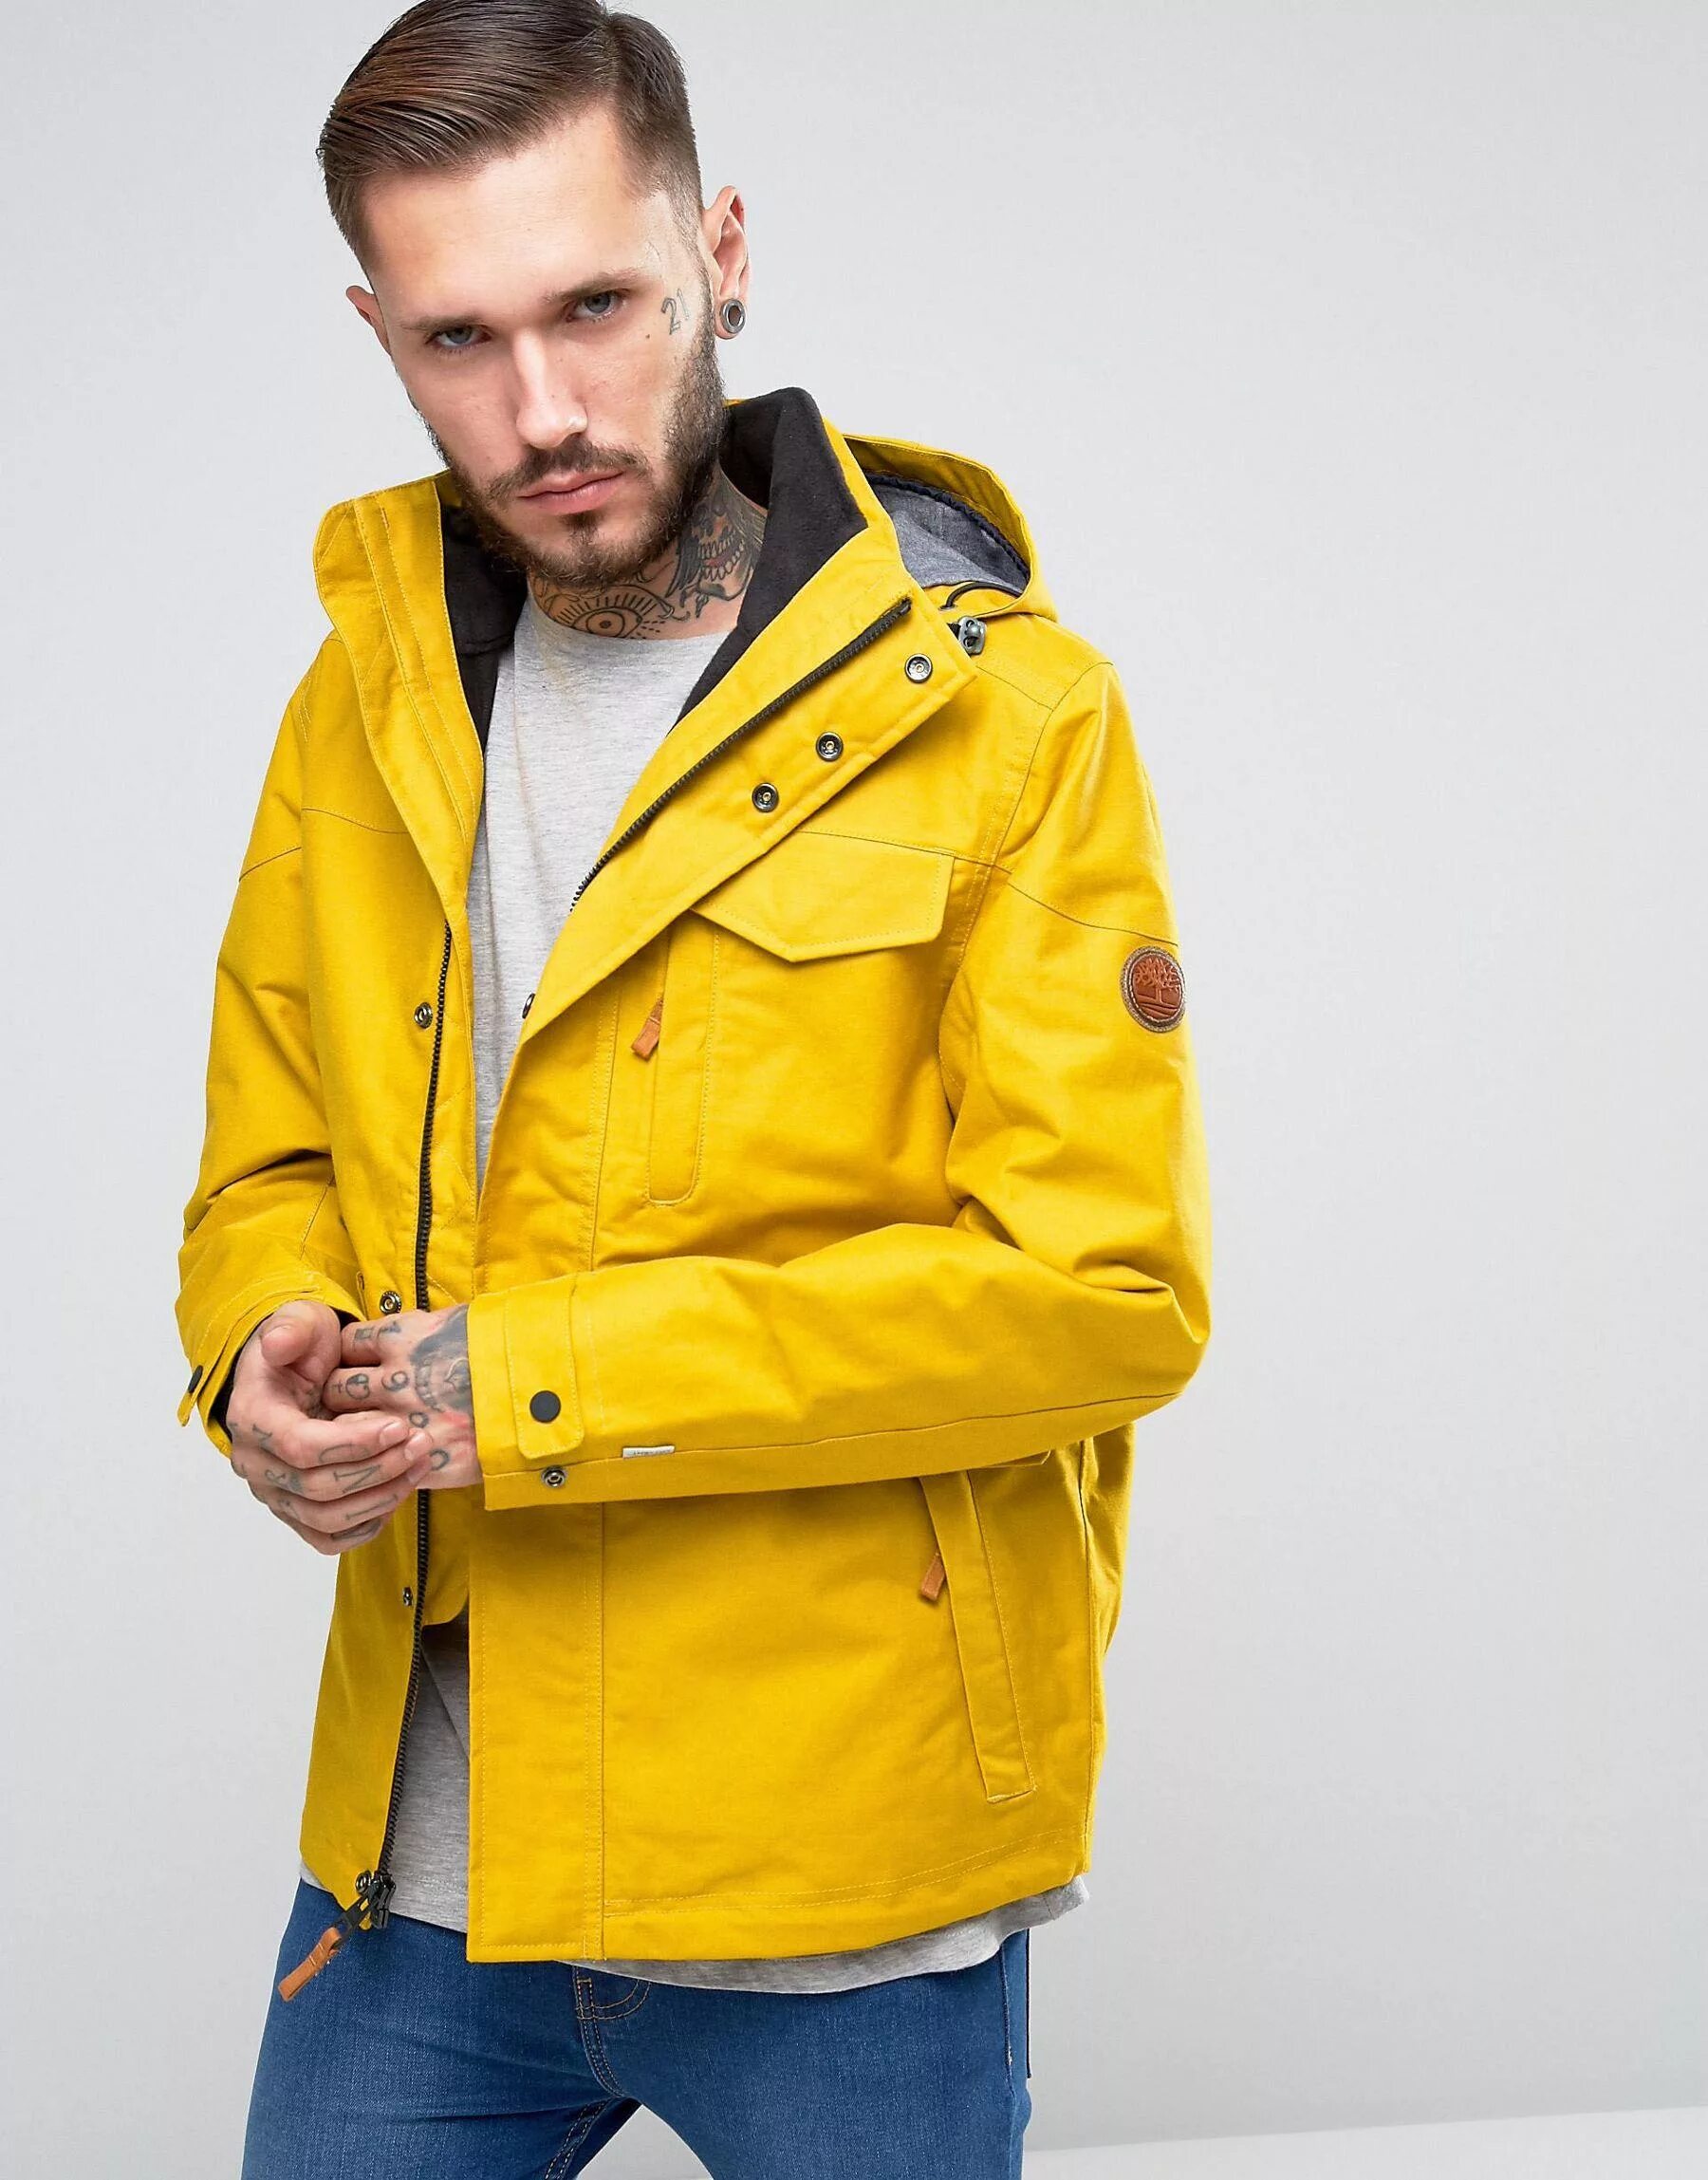 Куртка Timberland желтая. Желтая куртка мужская. Куртка Весенняя мужская желтая. Мужчина в желтой куртке. Мужчина в желтой куртке в крокус сити